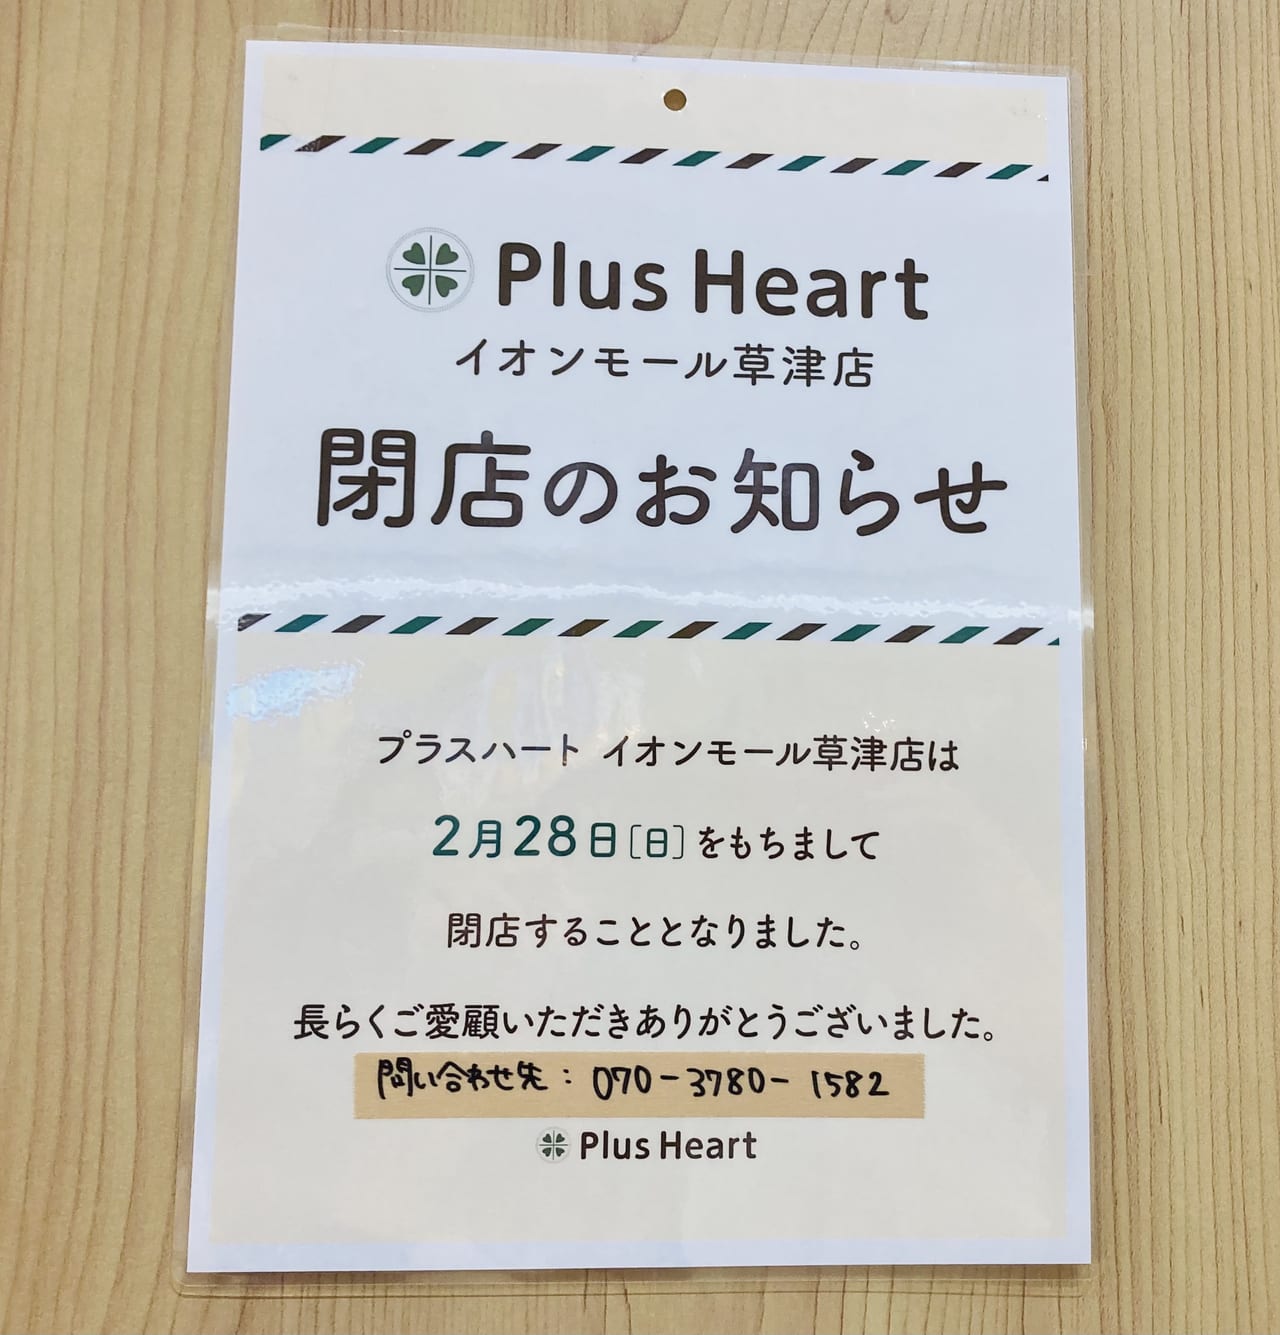 Plus Heart